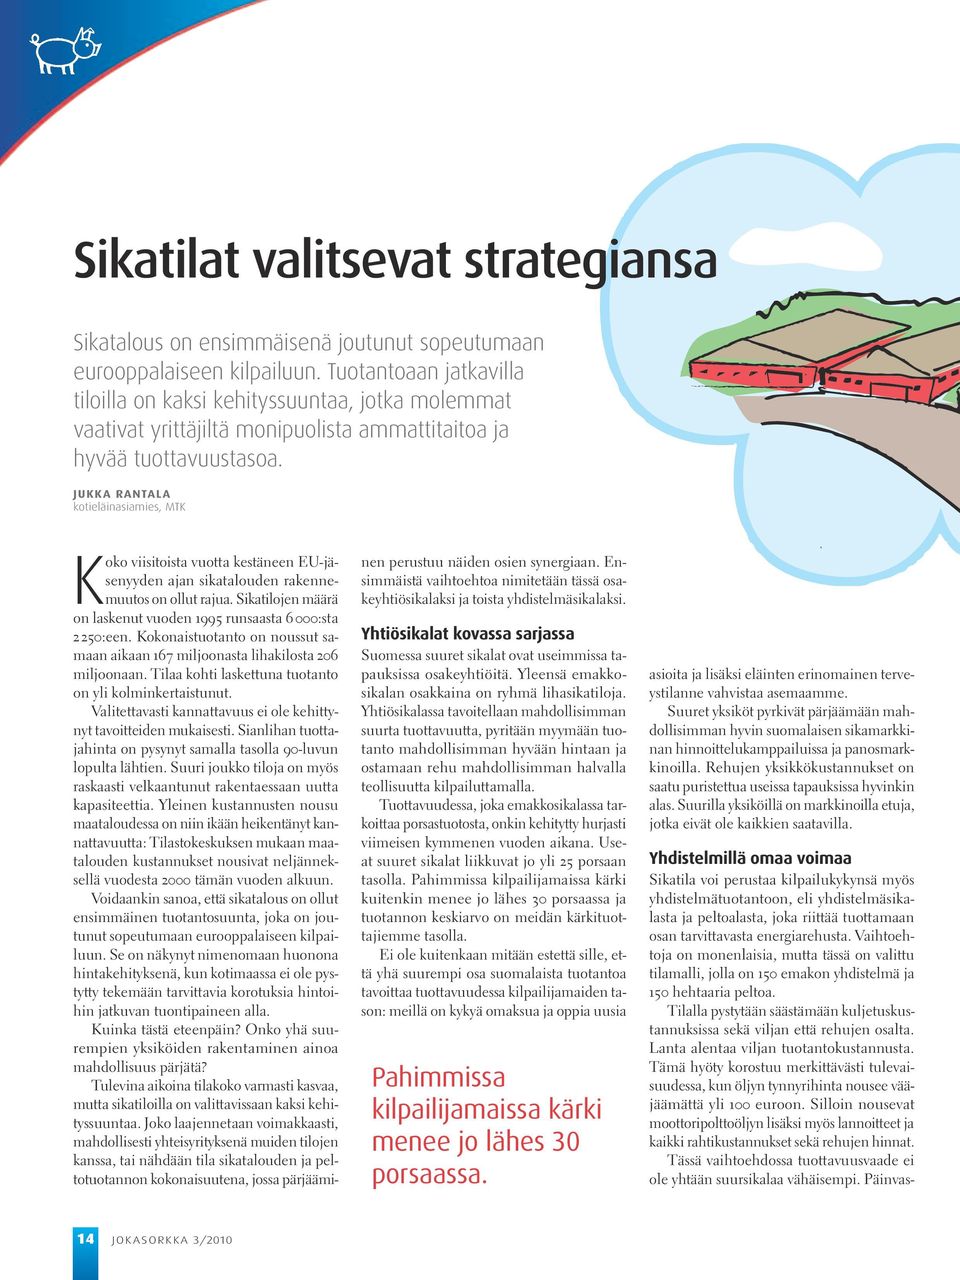 Jukka Rantala kotieläinasiamies, MTK Koko viisitoista vuotta kestäneen EU-jäsenyyden ajan sikatalouden rakennemuutos on ollut rajua.